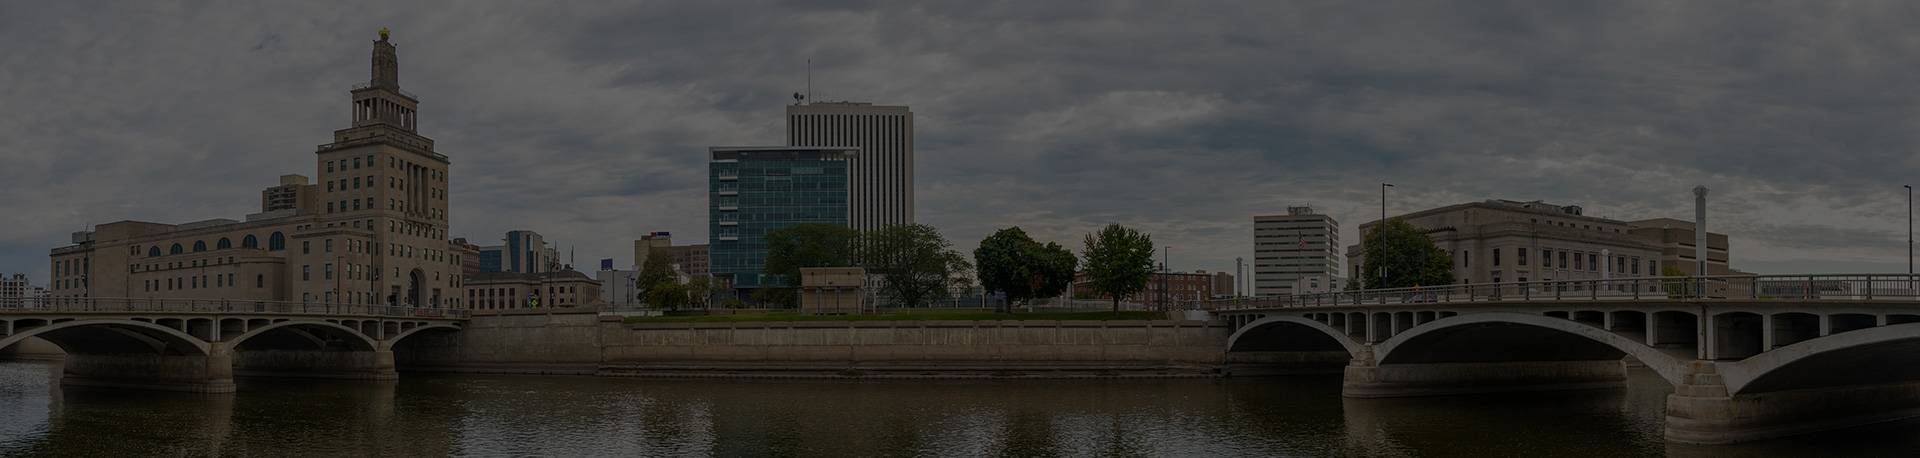 Cedar Rapids, IA skyline, corporate headquarters of Hibu